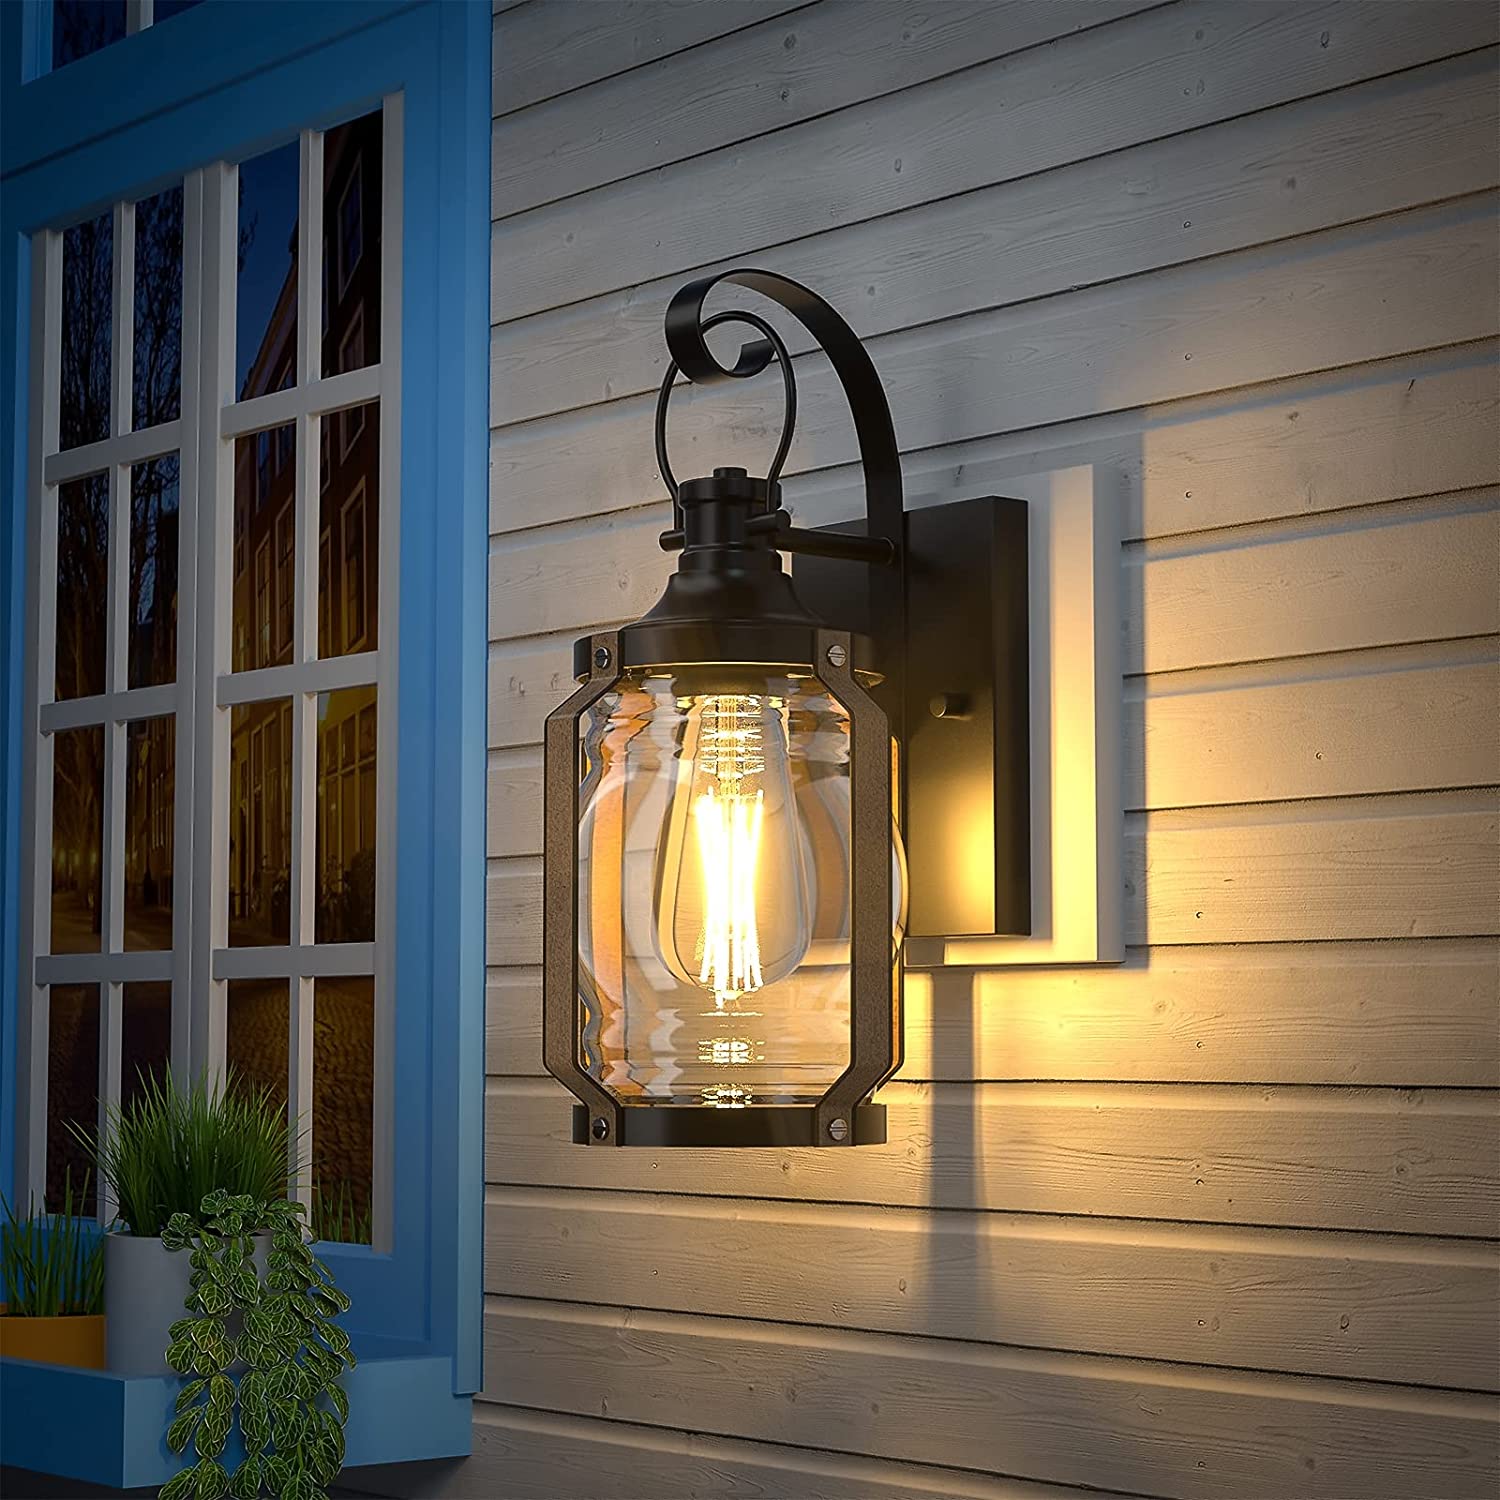 Glass wall light fixture black exterior wall lantern sconce